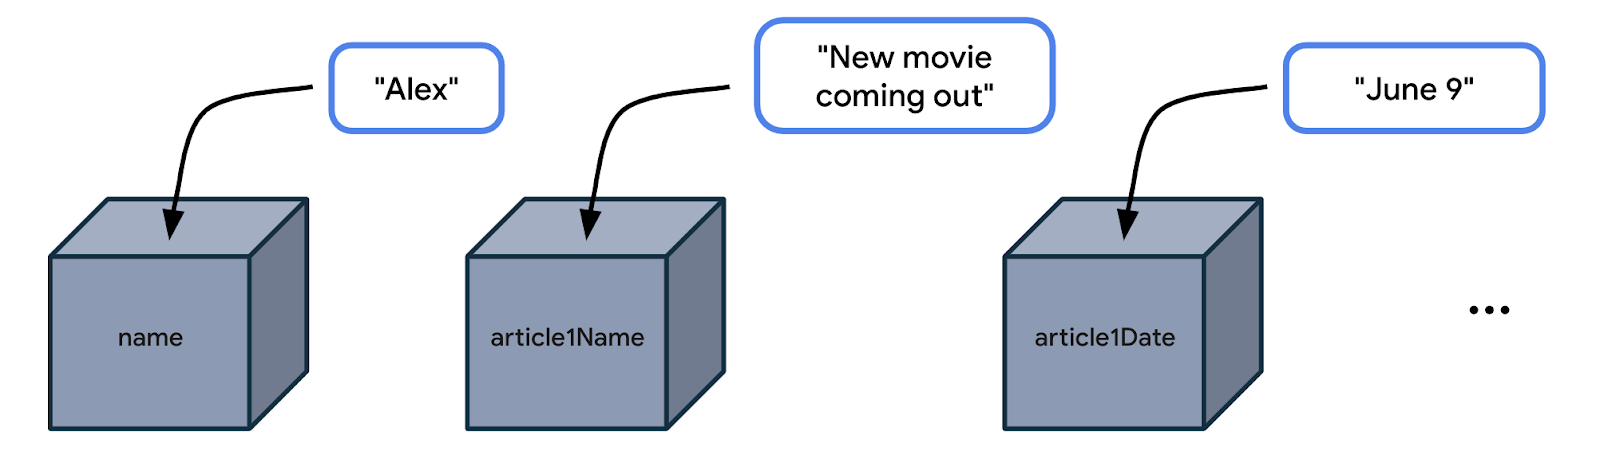 Hình minh hoạ này hiển thị 3 hộp nằm cạnh nhau. Hộp đầu tiên là name. Bên cạnh có một nhãn hiển thị "Alex". Có một mũi tên chỉ hướng từ "Alex" vào hộp. Điều này nghĩa là giá trị "Alex" đang được lưu trữ trong hộp tên. Hộp thứ hai là article1Name. Bên cạnh có một nhãn hiển thị "New movie coming out". Có một mũi tên chỉ hướng từ chuỗi vào hộp thứ hai. Điều này có nghĩa là giá trị "New movie coming out" đang được lưu trữ trong hộp article1Name. Hộp thứ ba là article1Date. Bên cạnh có một nhãn hiển thị "June 9". Có một mũi tên chỉ hướng từ "June 9" chuỗi vào hộp thứ ba. Điều này có nghĩa là giá trị "June 9" đang được lưu trữ trong hộp article1Date.